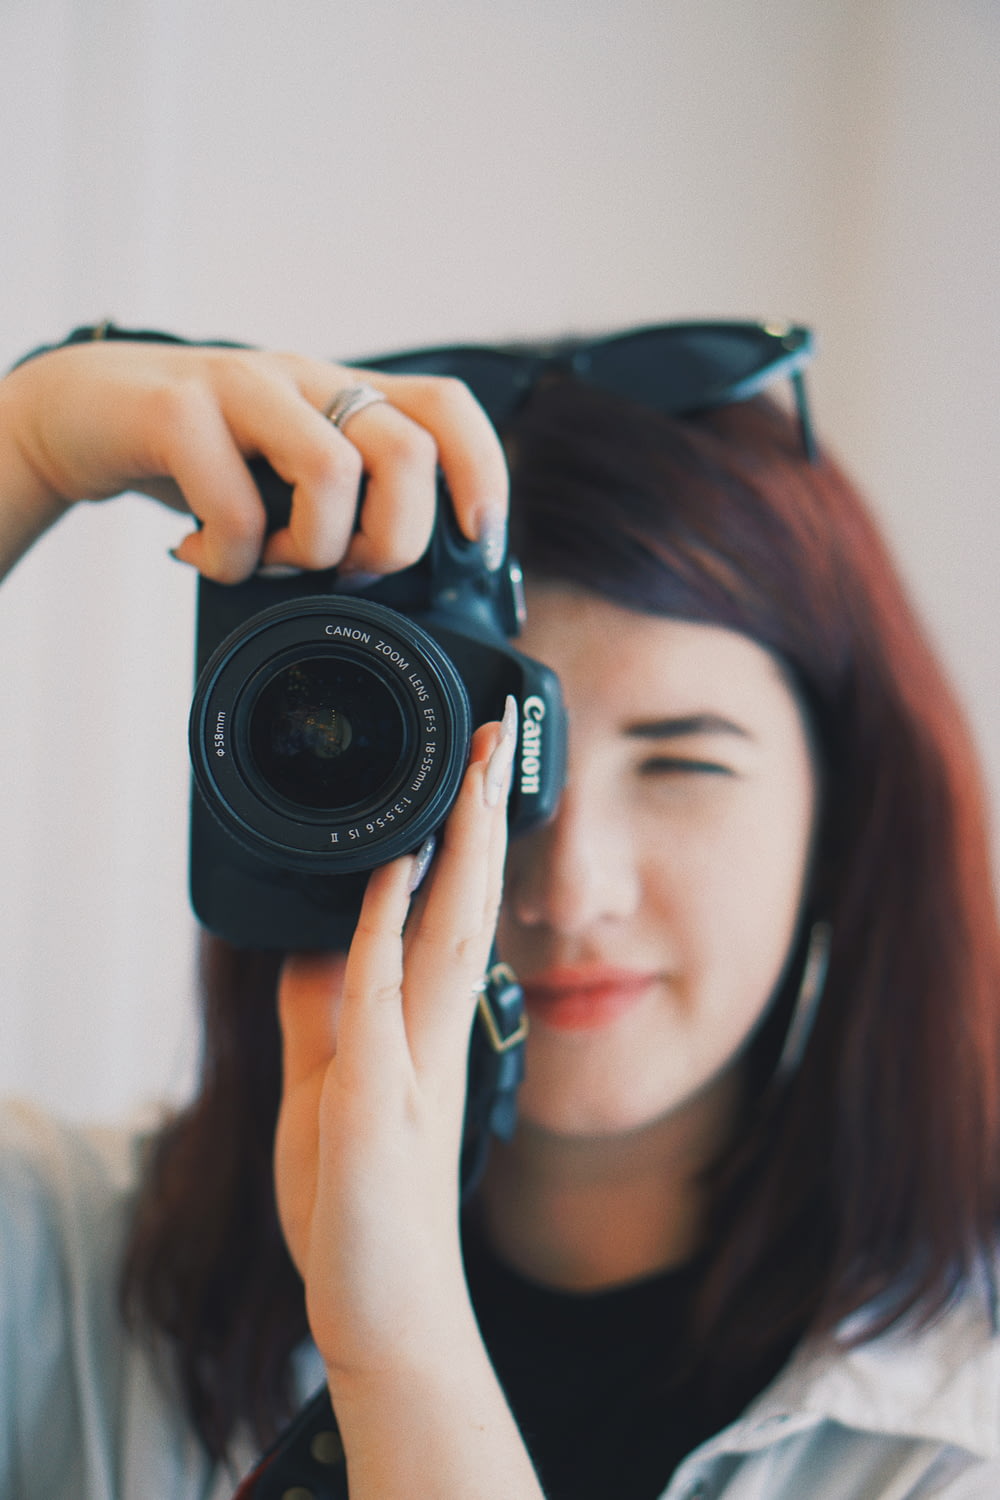 foto de foco raso da mulher usando a câmera DSLR Canon preta